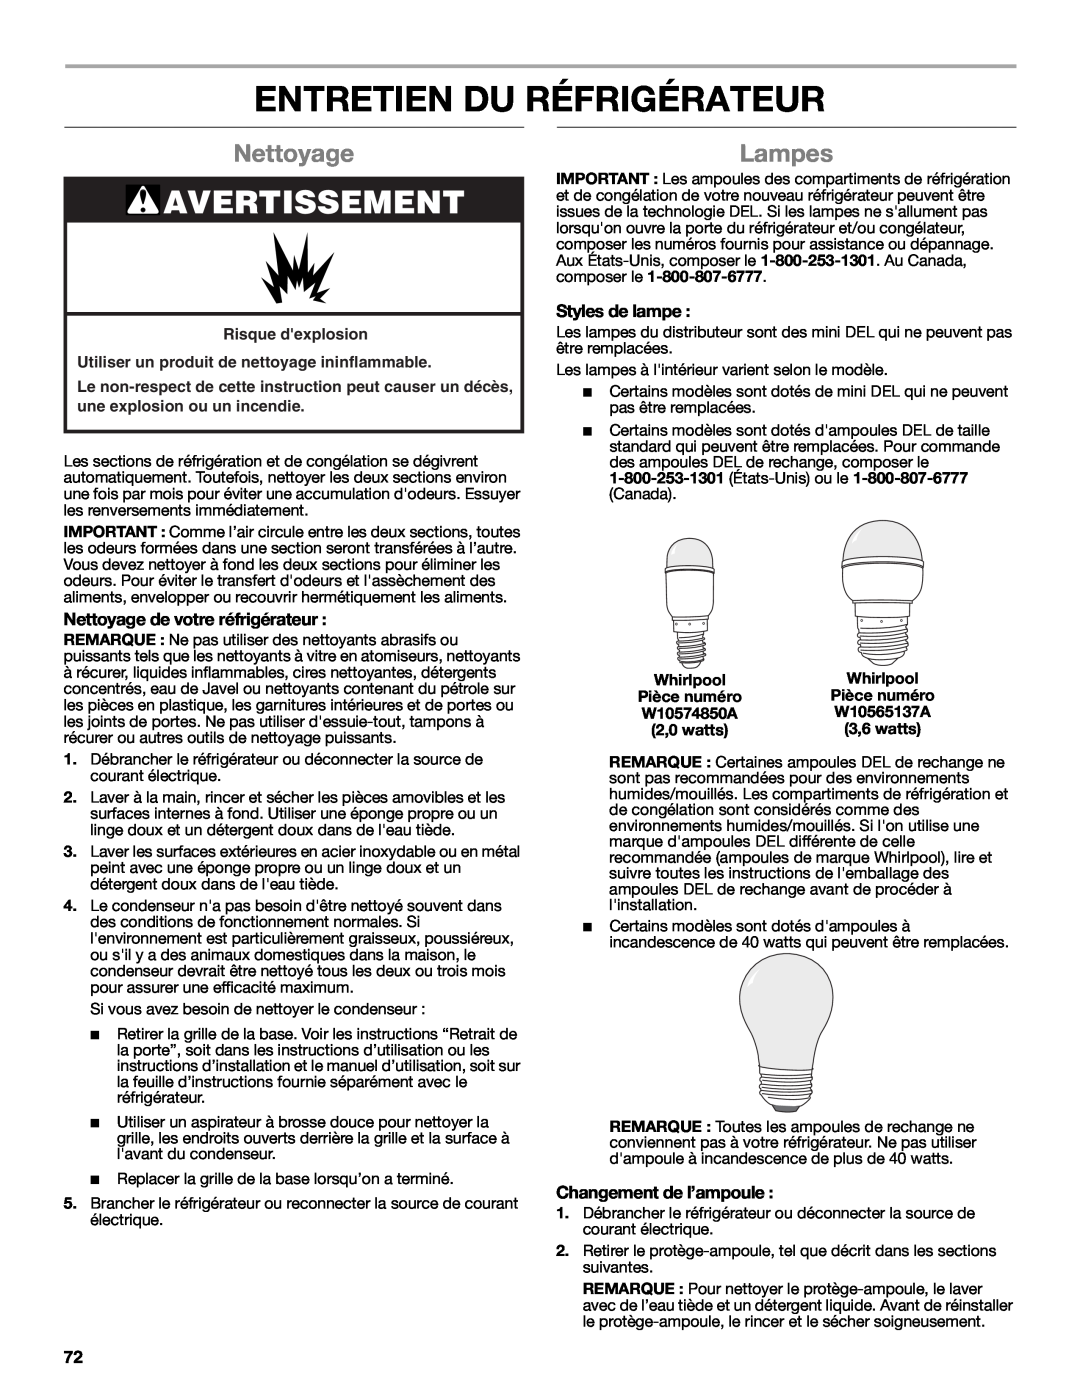 Whirlpool W10632883A Entretien Du Réfrigérateur, Lampes, Nettoyage de votre réfrigérateur, Styles de lampe 